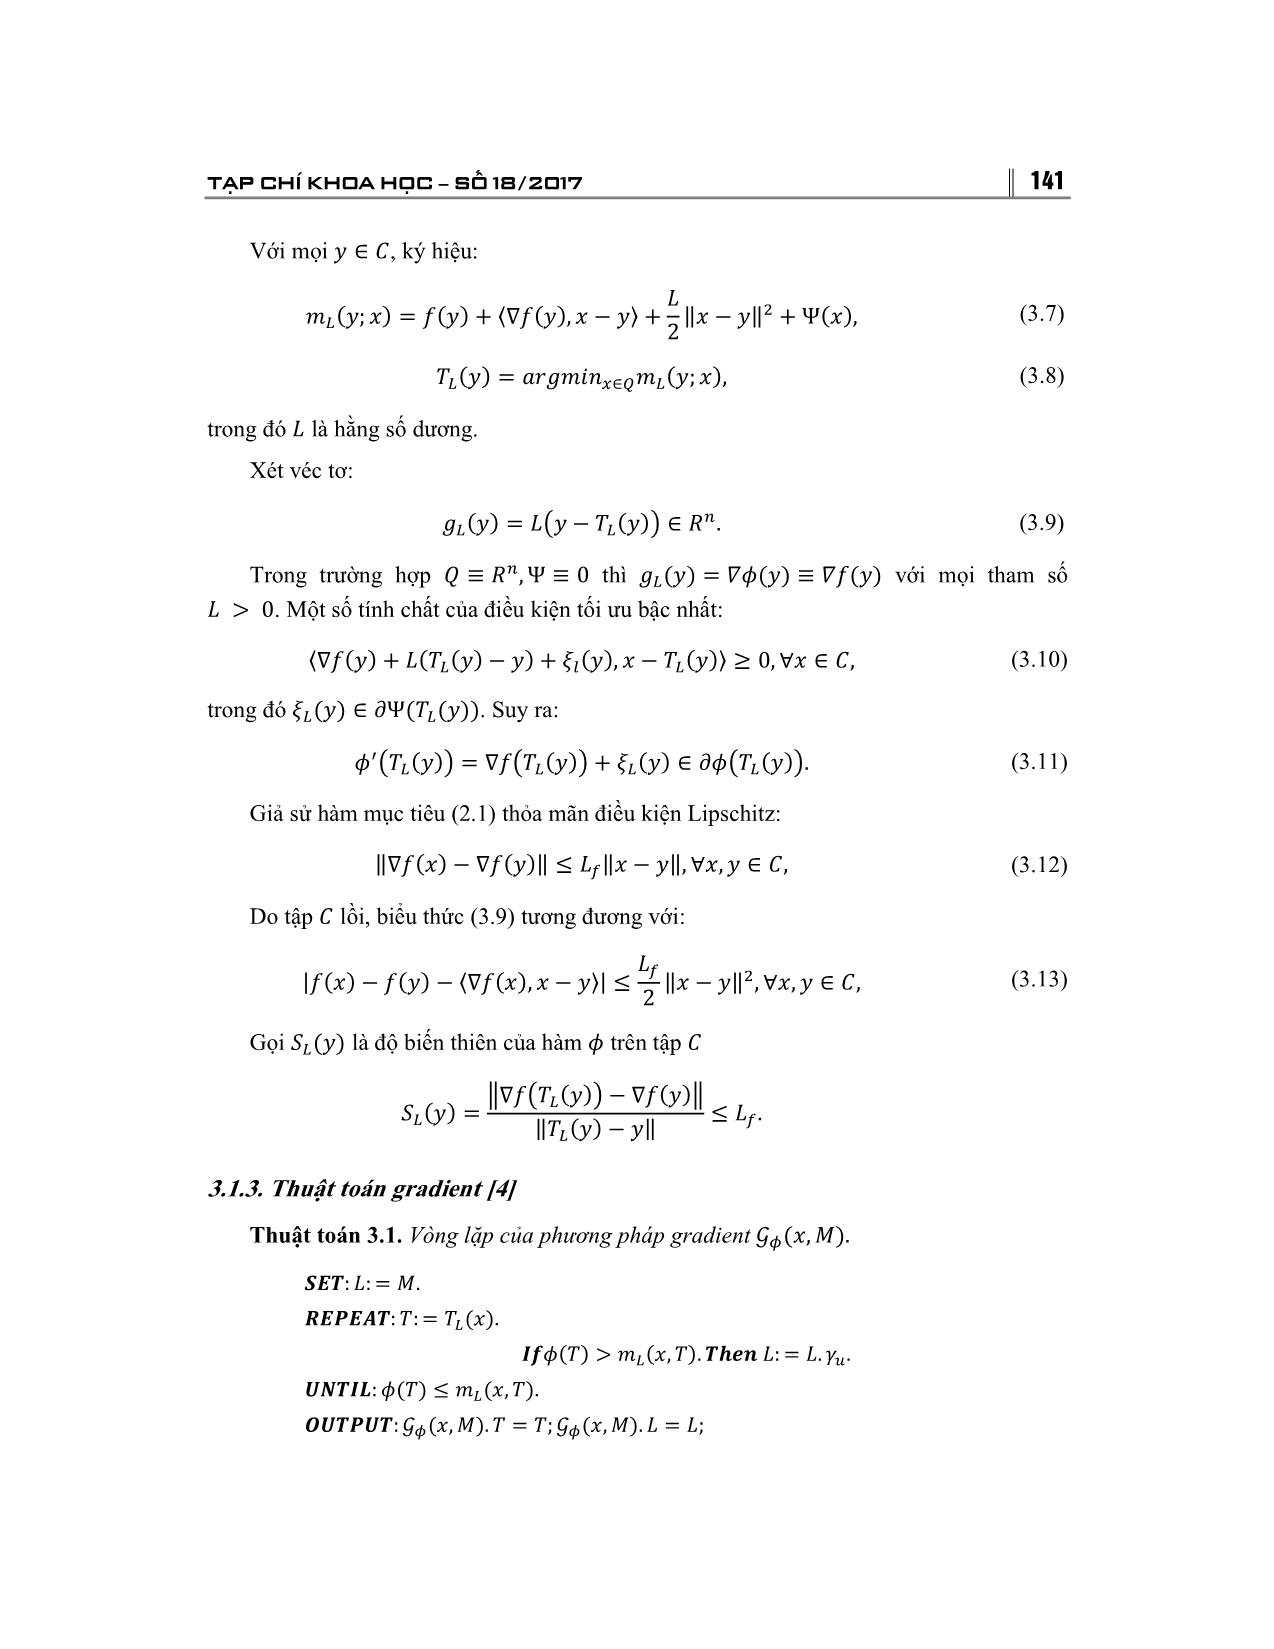 Giải bài toán tối ưu bằng phương pháp Gradient và ứng dụng trang 6